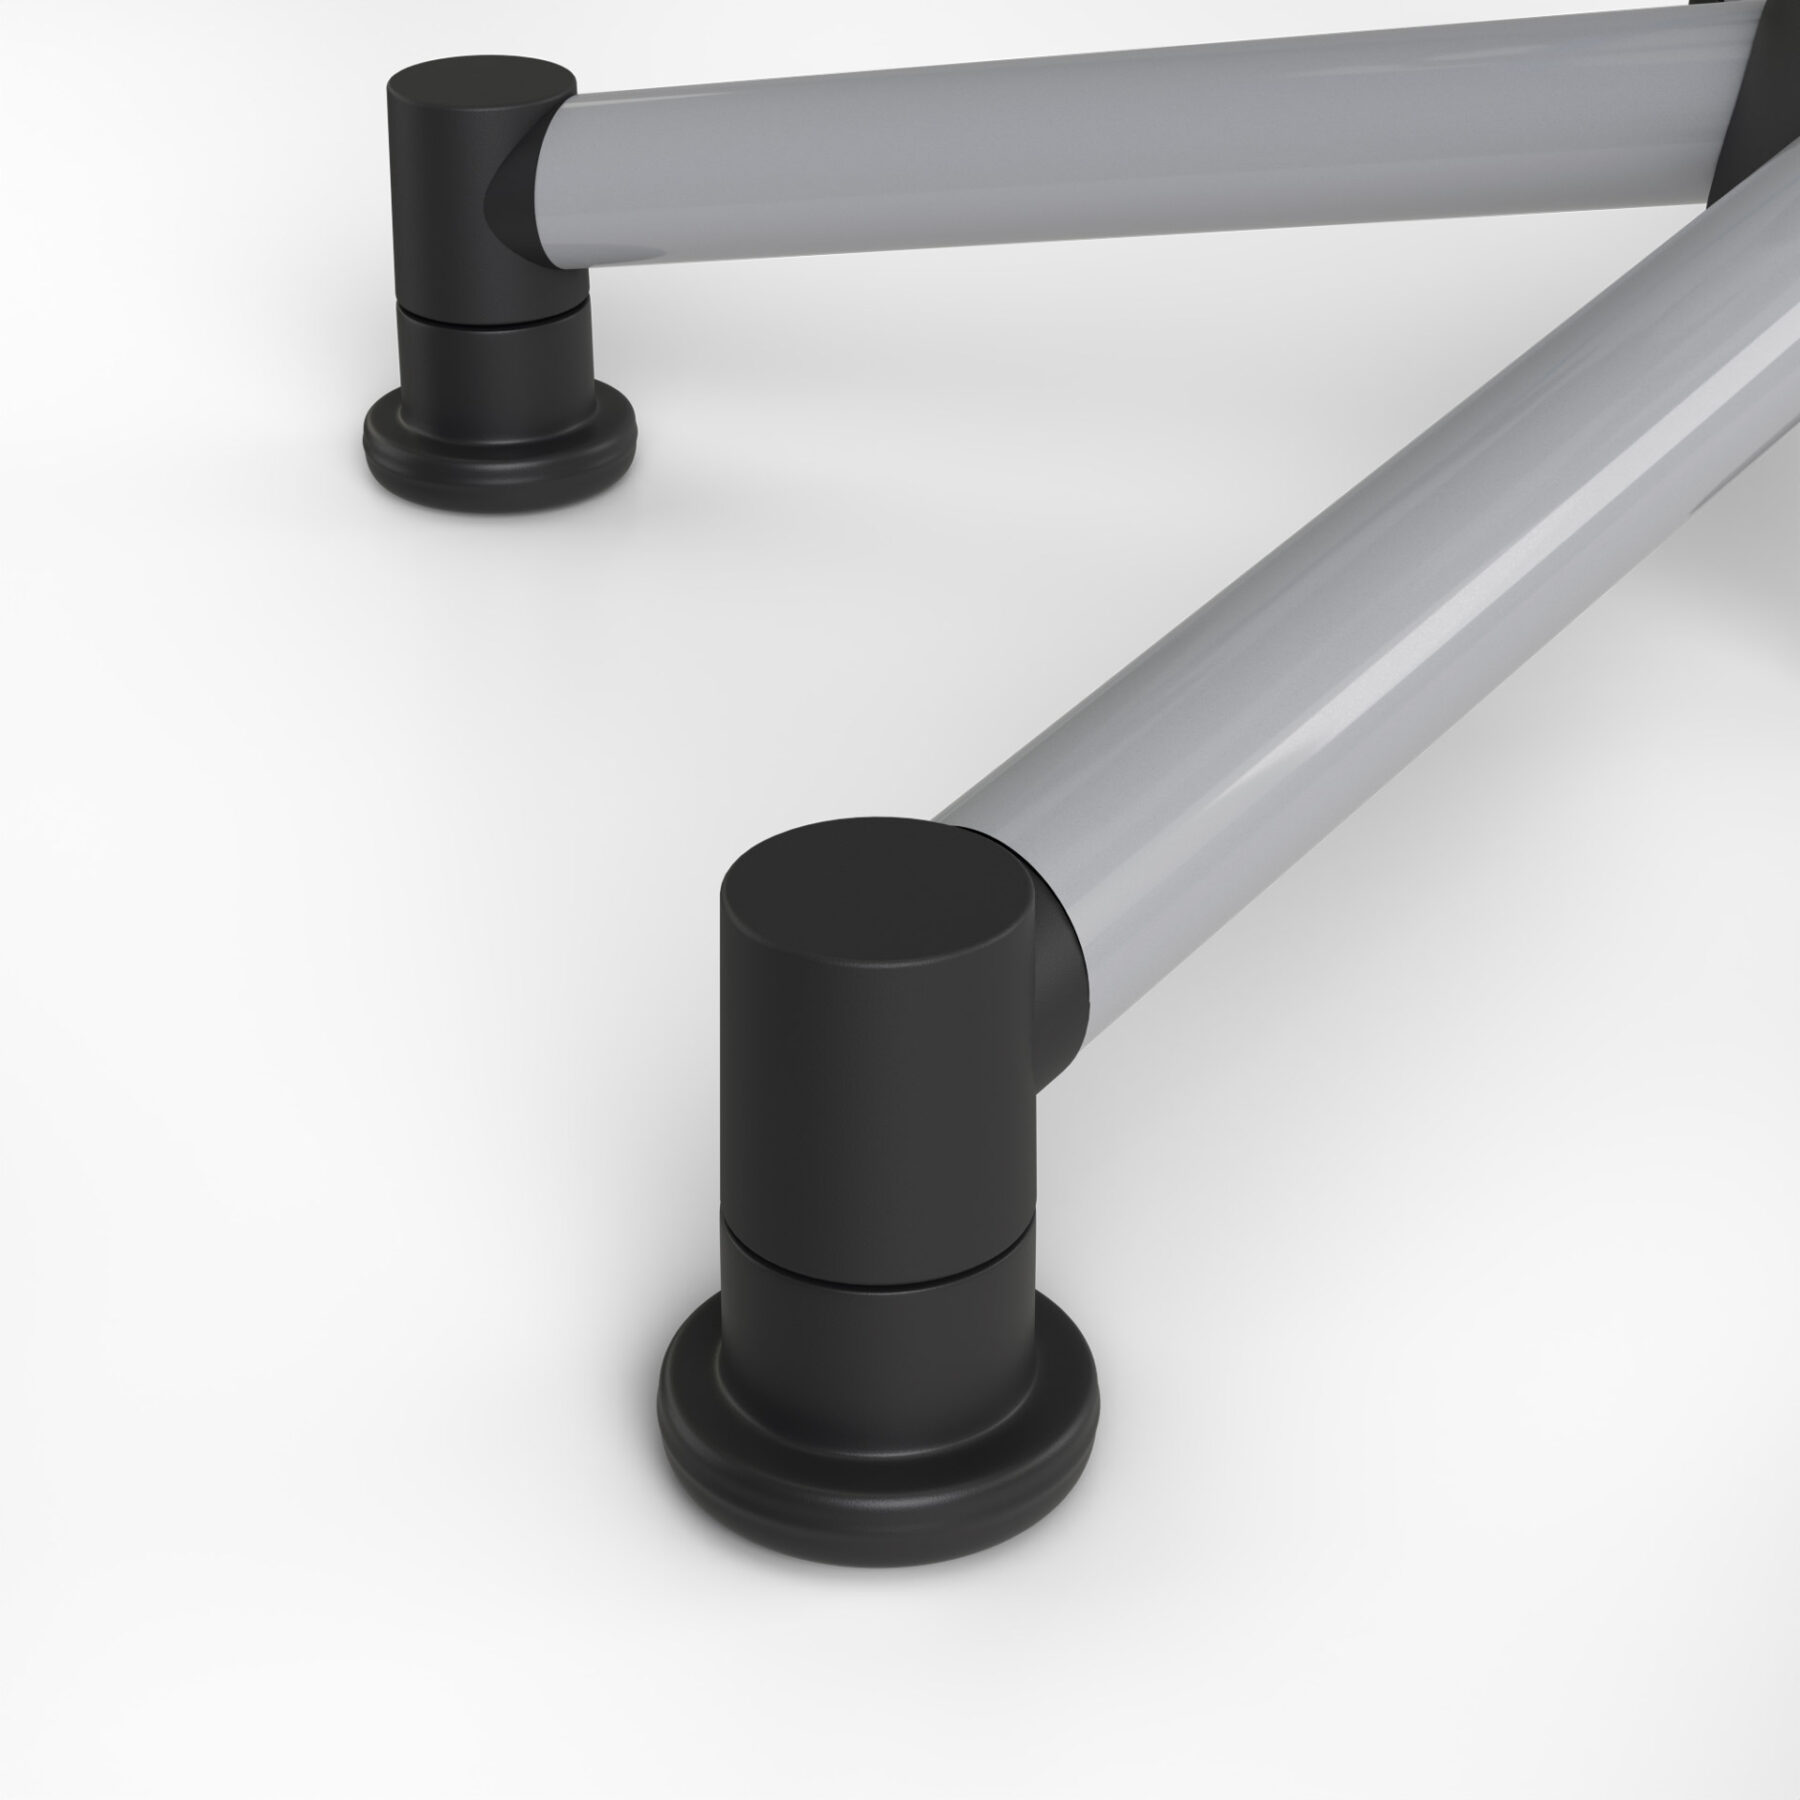 Detailansicht der stabilen, schwarzen Standfüße des PAIDI Schreibtischstuhls Tio auf weißem Hintergrund.